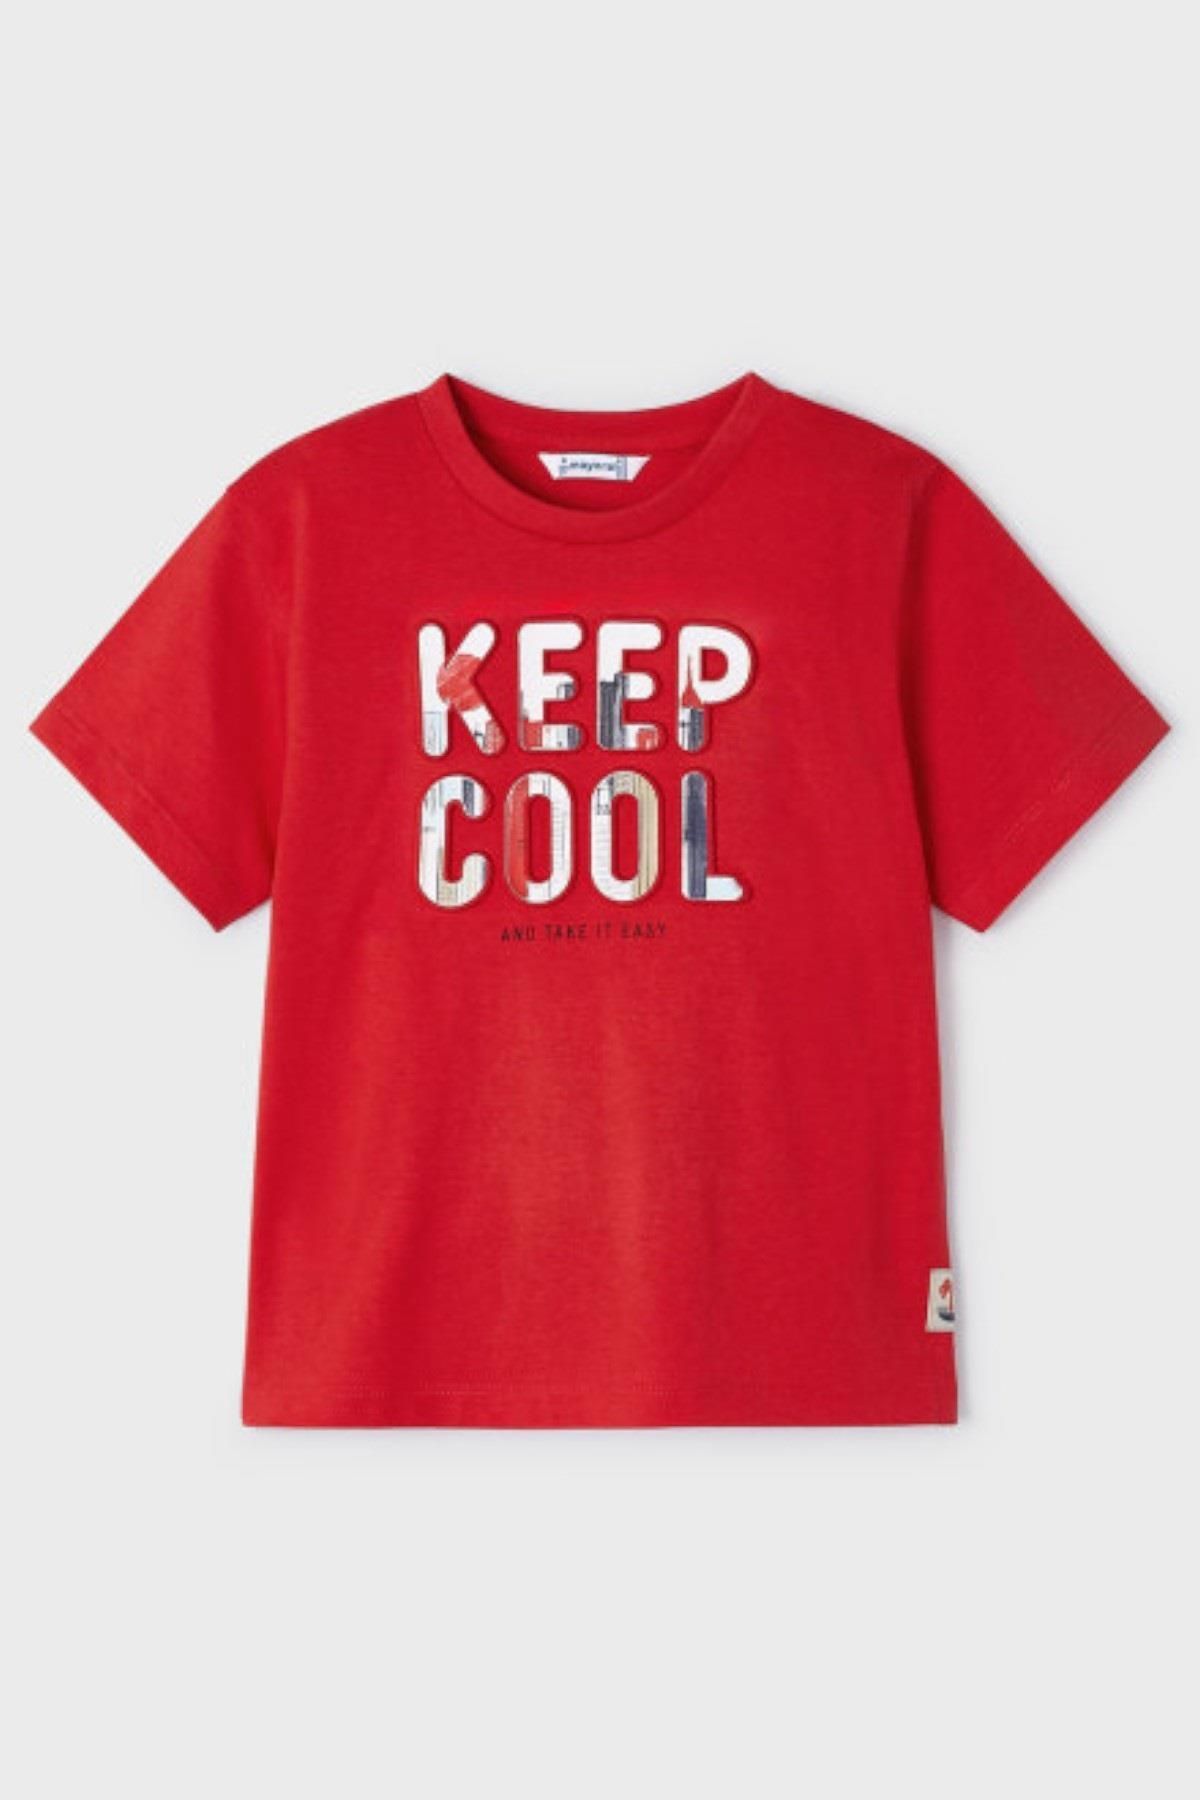 Mayoral Erkek Çocuk 4-9 Yaş Kısa Kol T-shirt 3016 Kırmızı